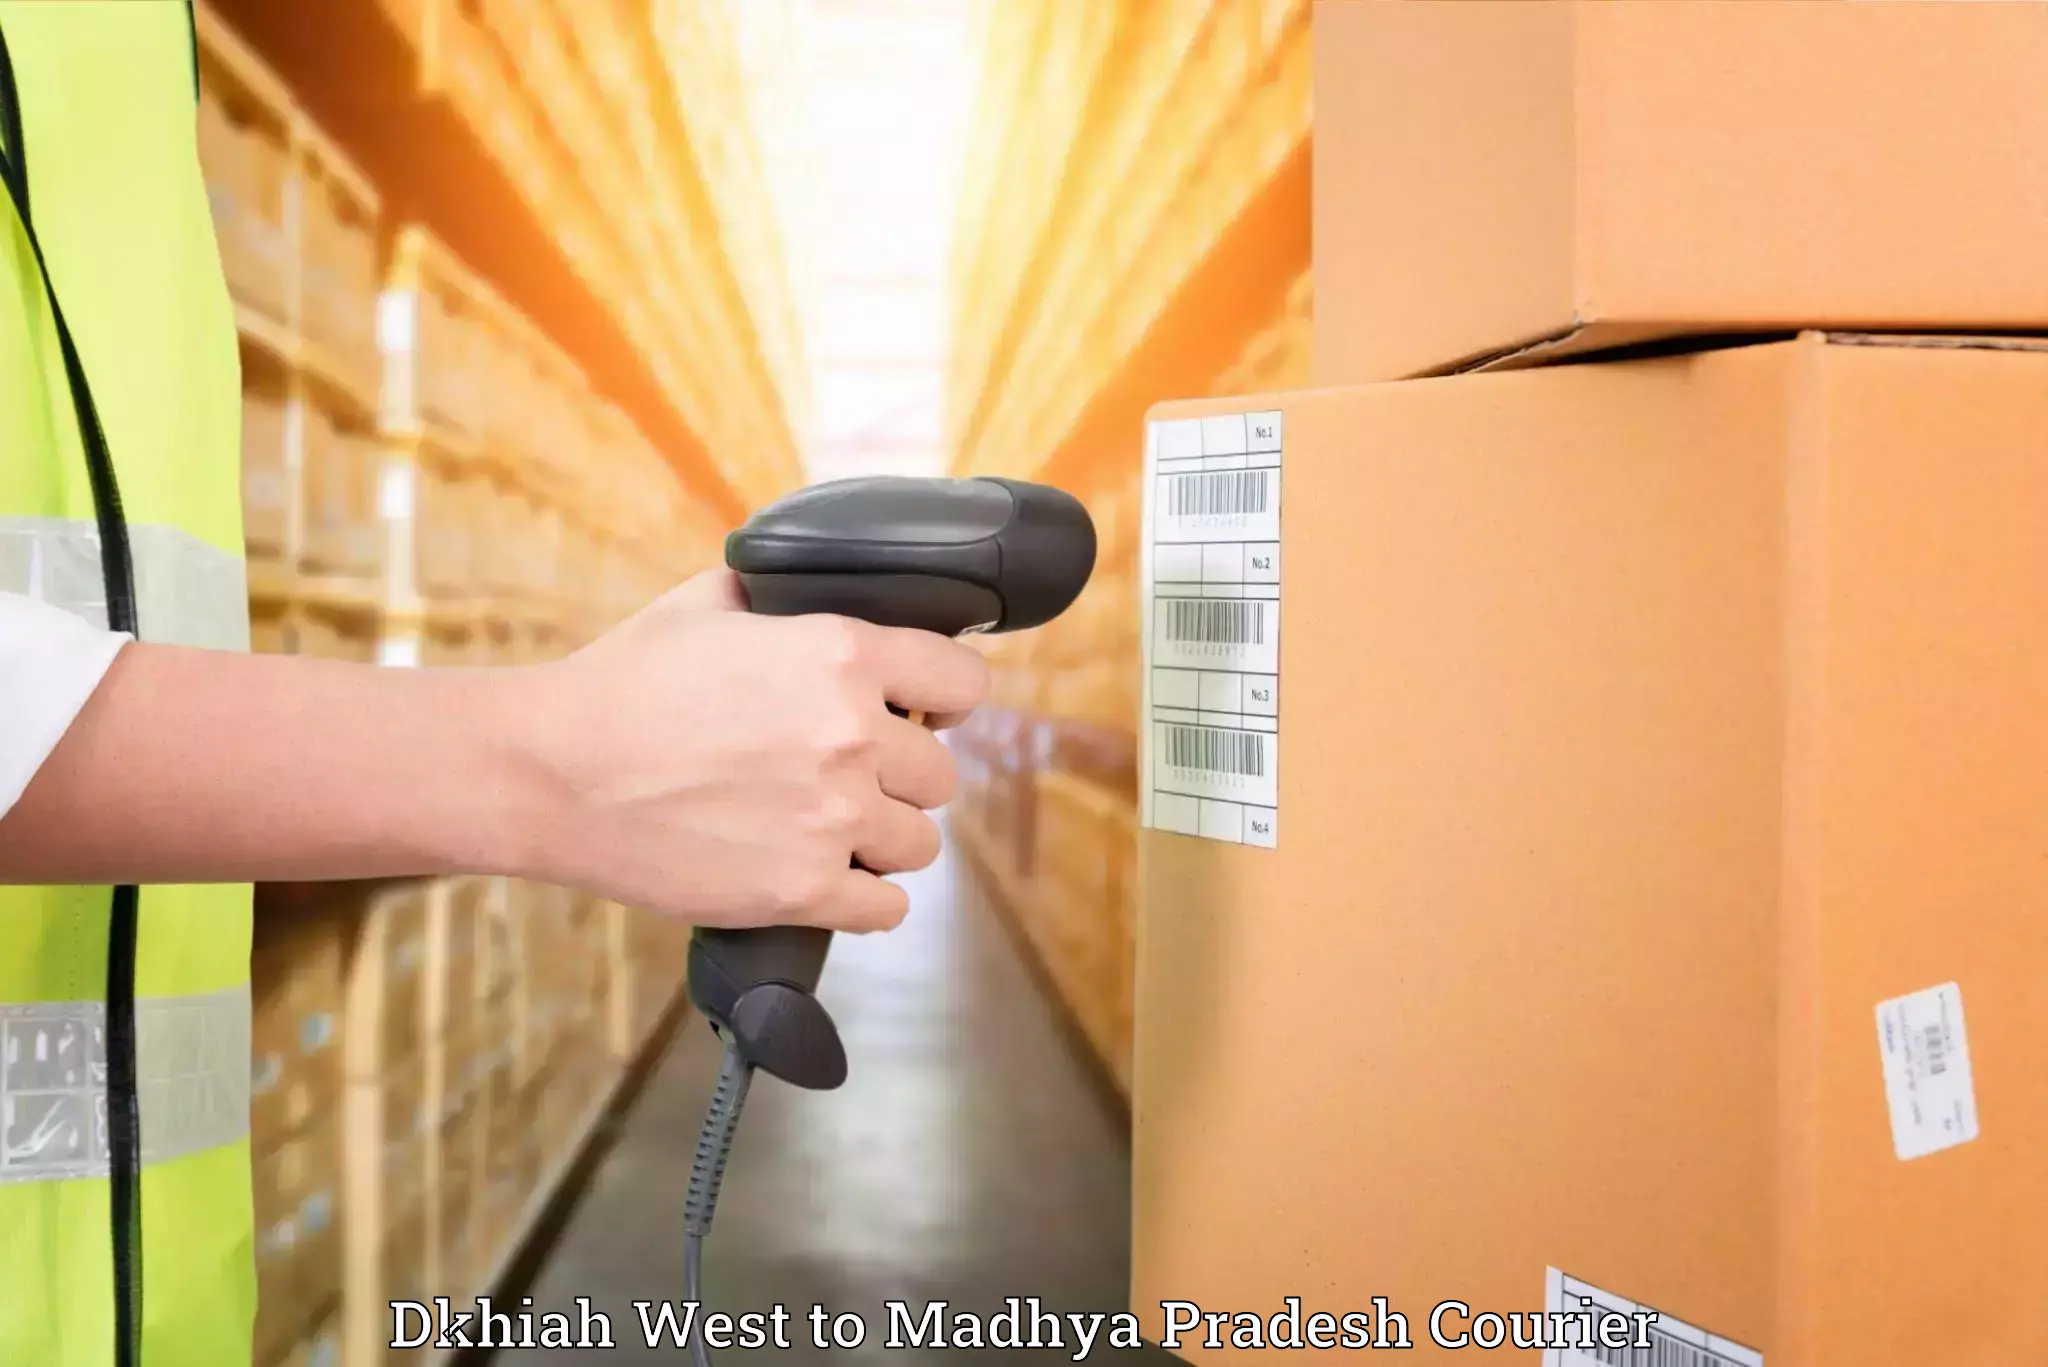 Furniture moving experts Dkhiah West to Badnagar